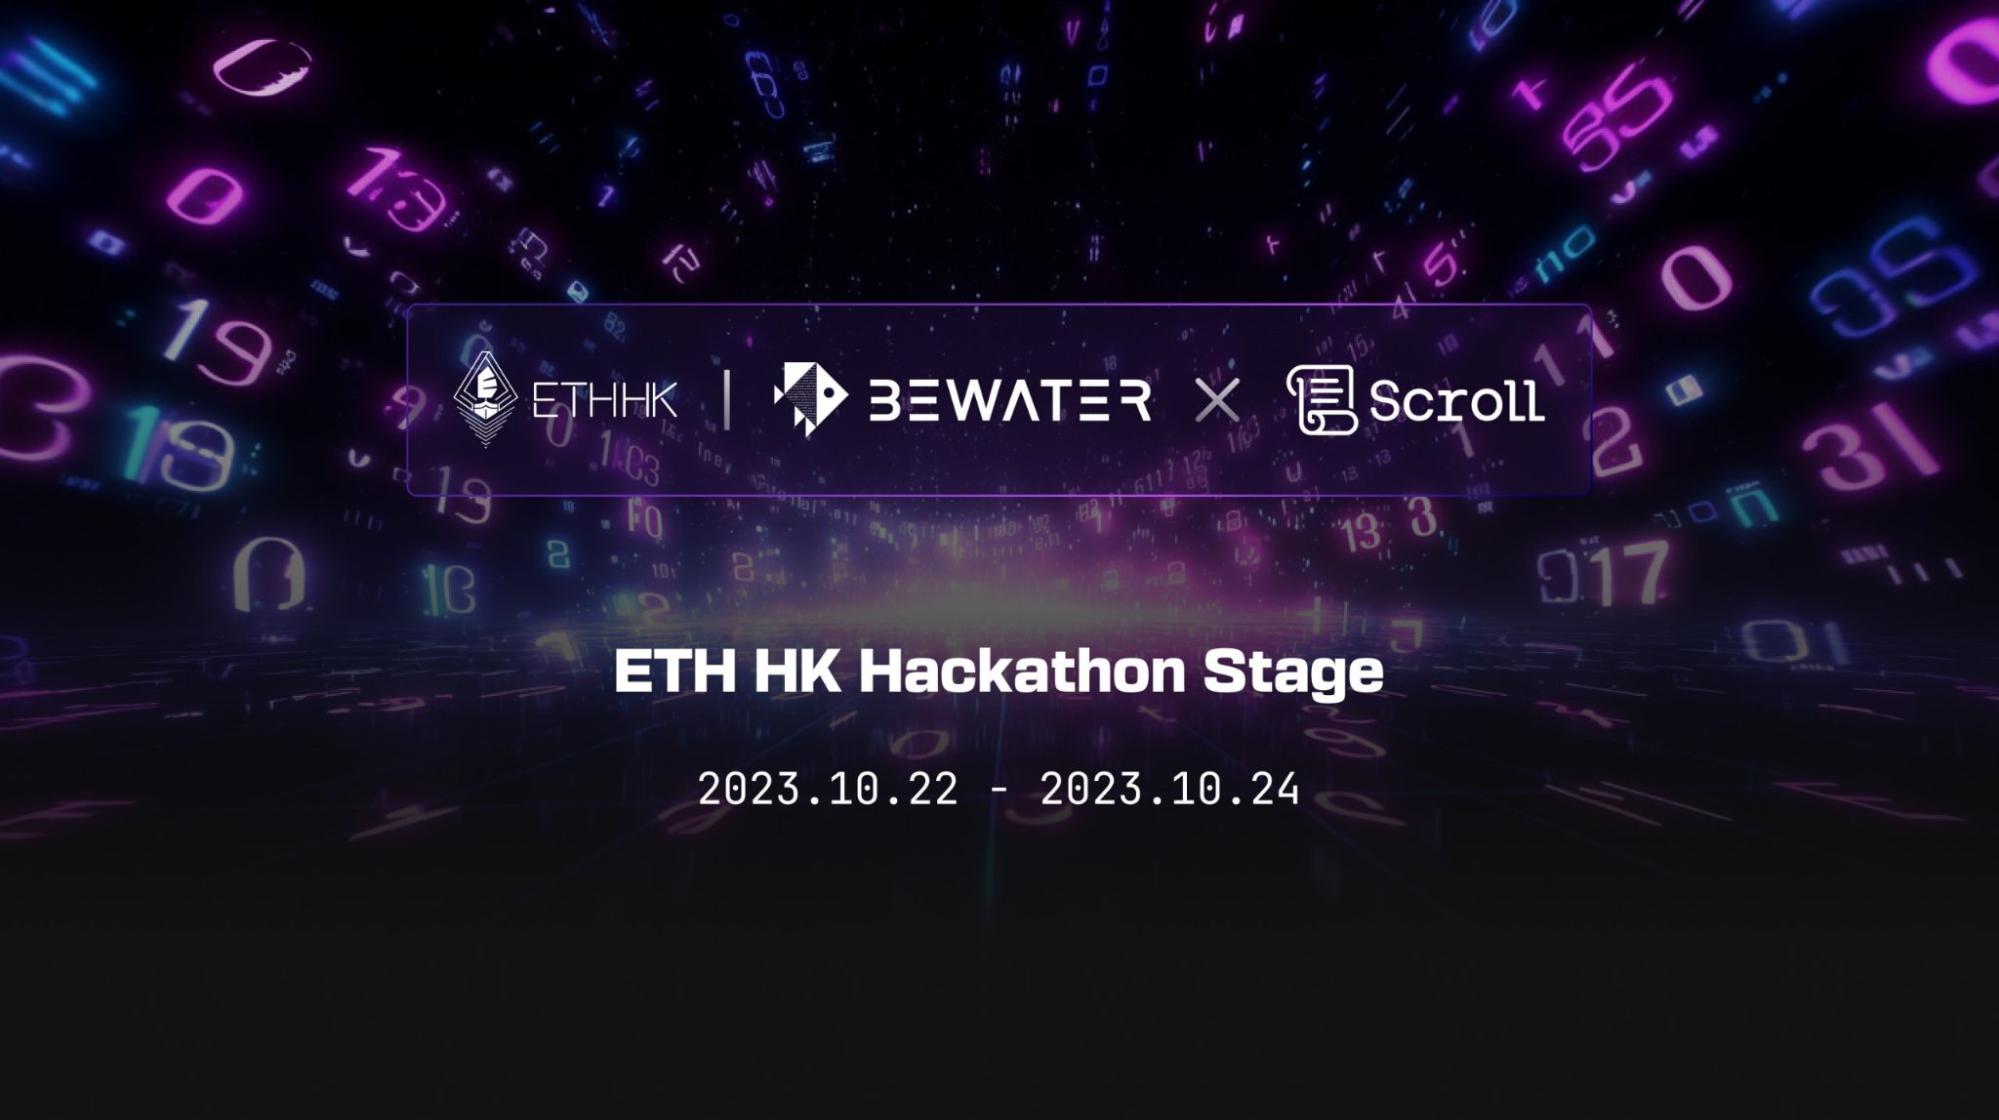 ETH Hong Kong 2023 Event